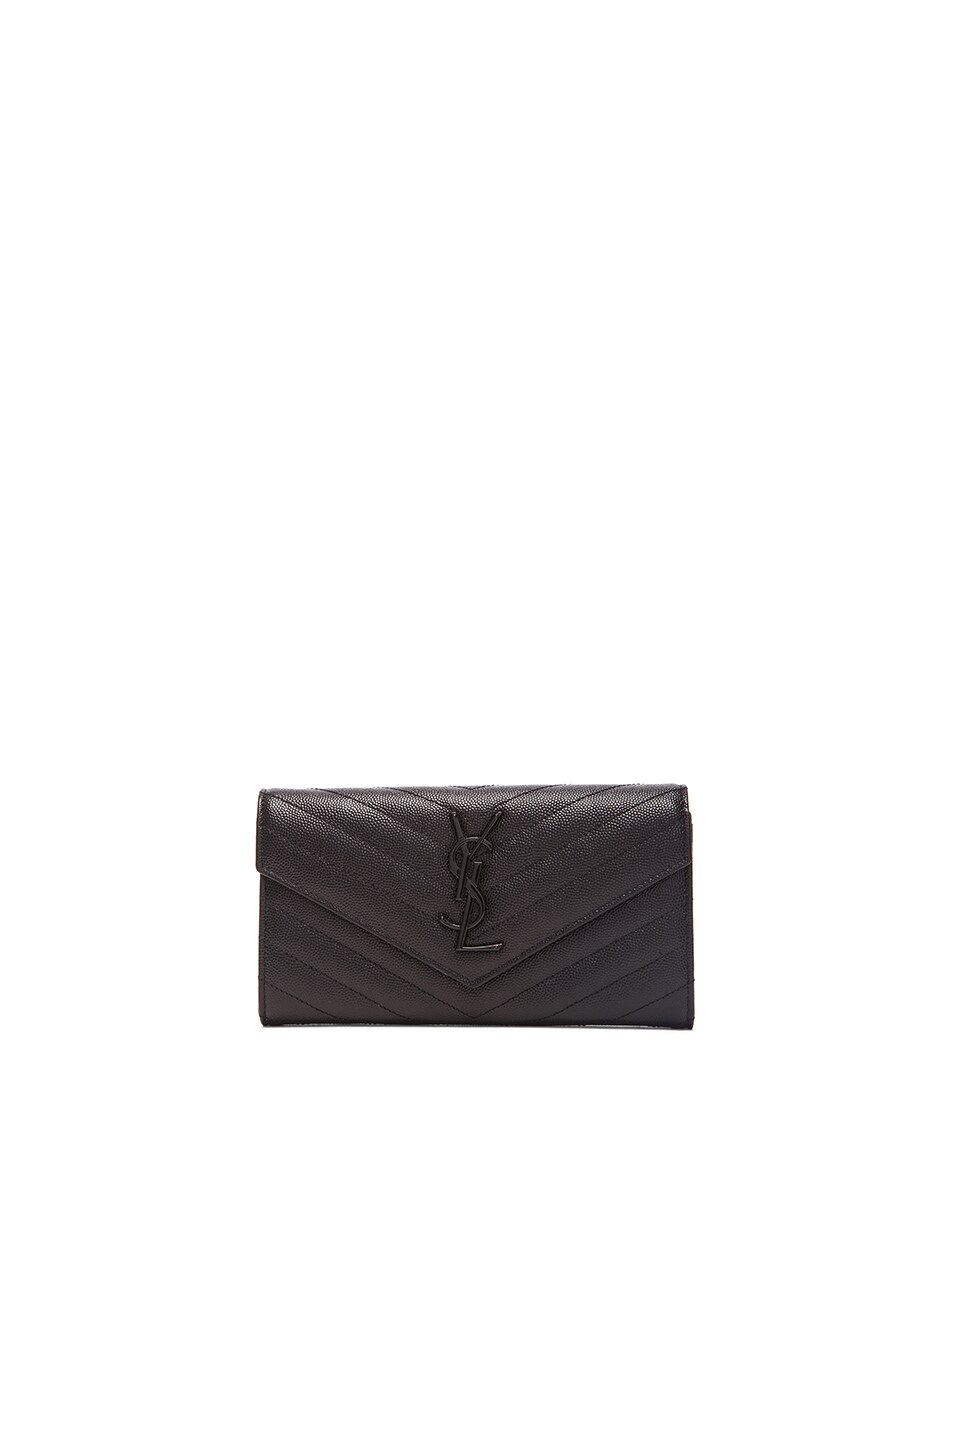 Image 1 of Saint Laurent Monogram Flap Wallet in Black/Black